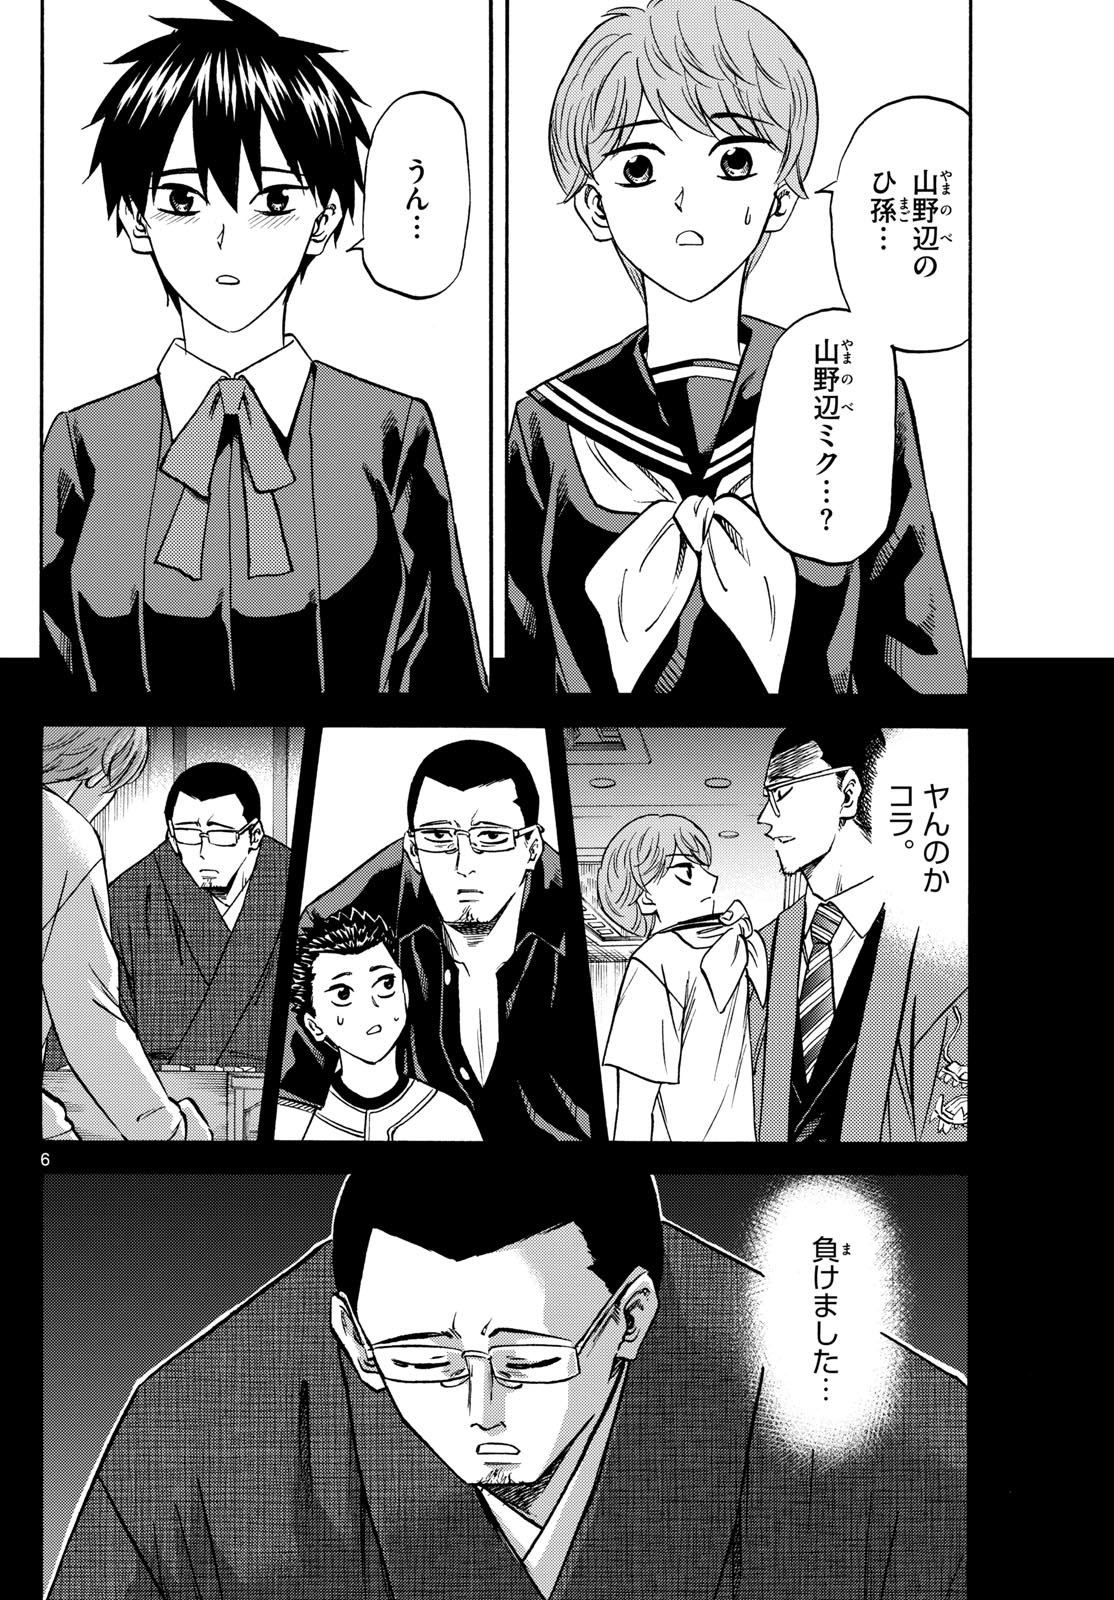 Tatsu to Ichigo - Chapter 188 - Page 6